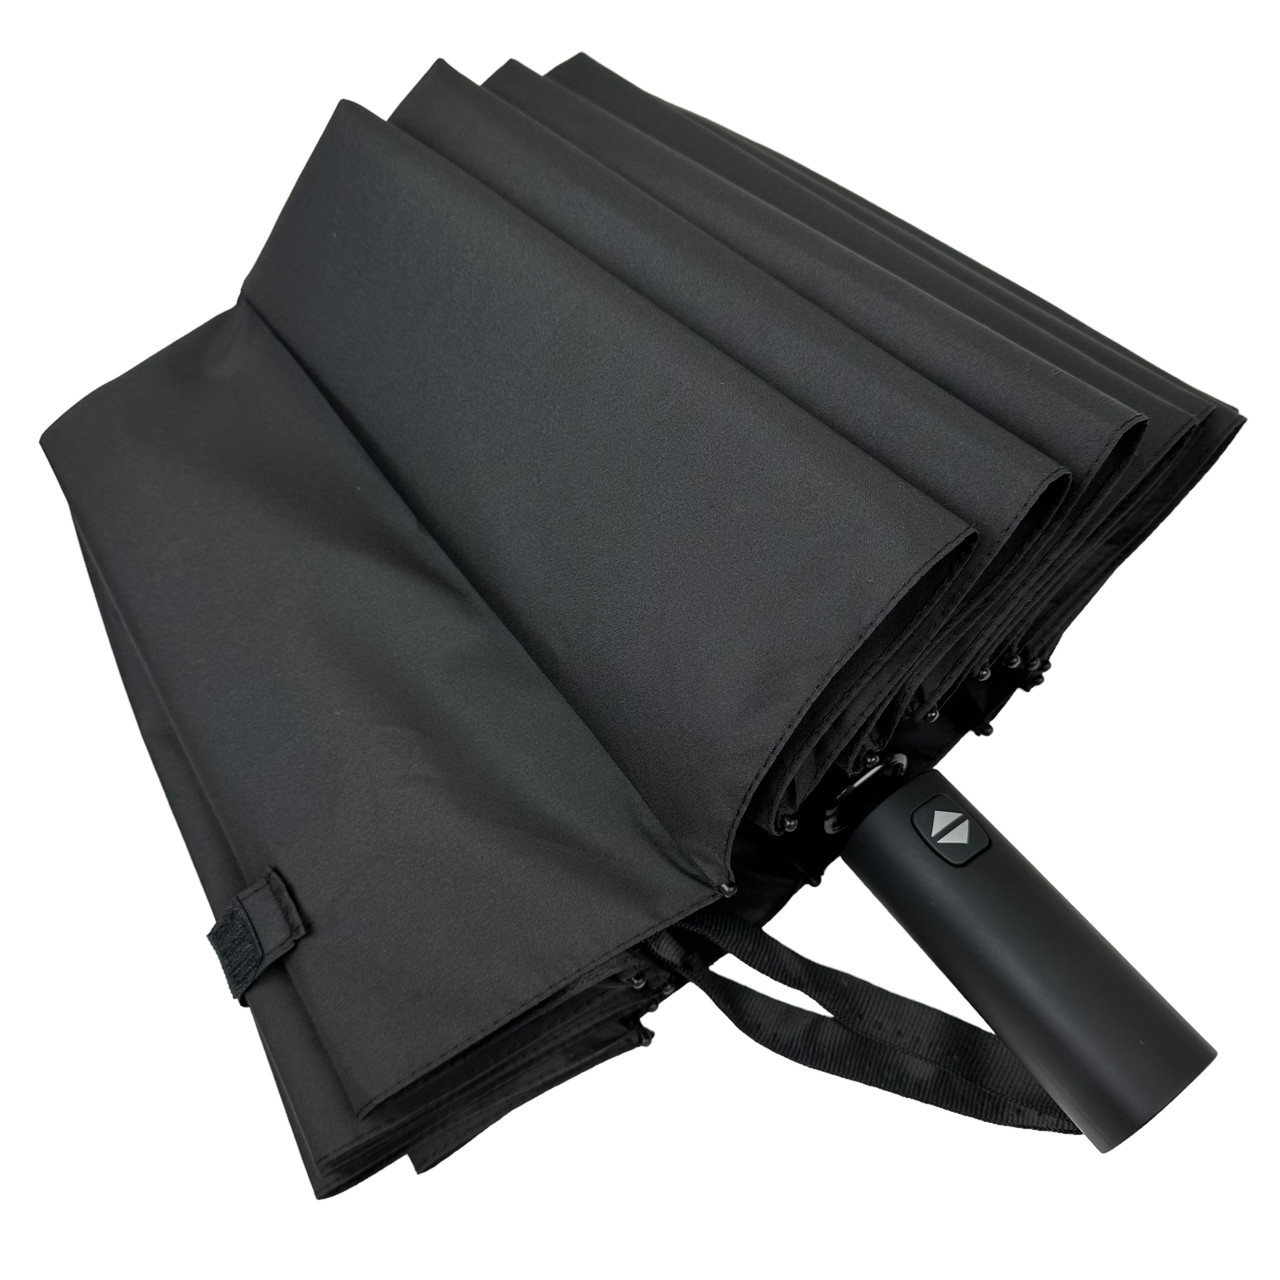 Мужской складной зонтик полный автомат Toprain 112 см черный - фото 6